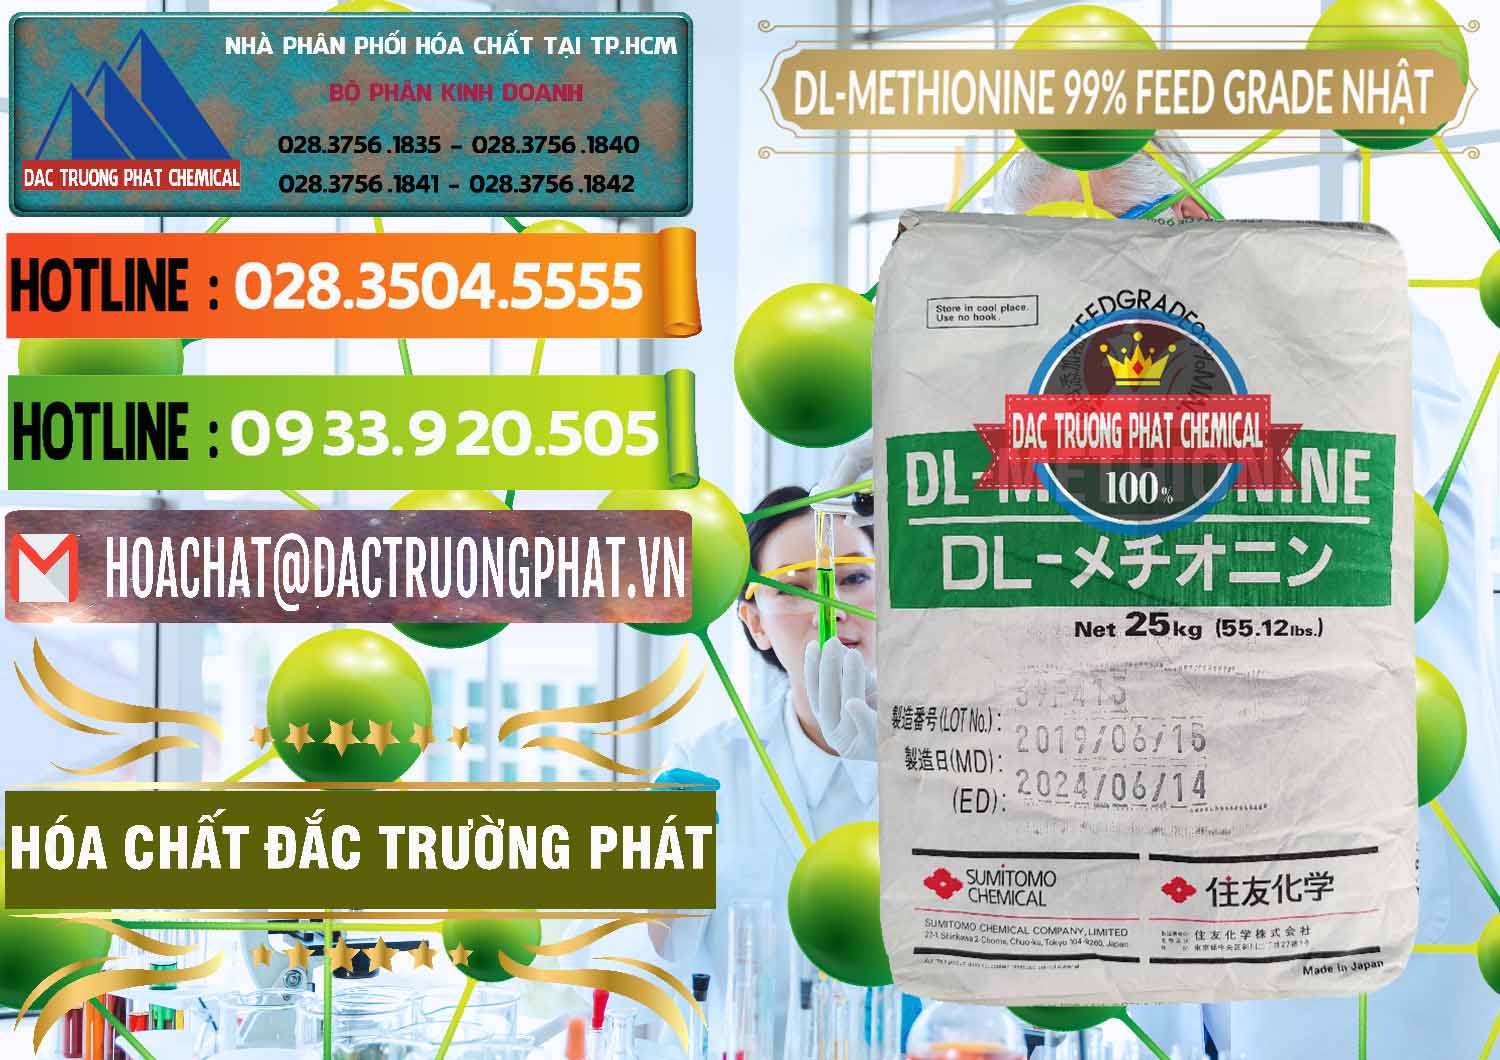 Đơn vị chuyên kinh doanh & bán DL-Methionine - C5H11NO2S Feed Grade Sumitomo Nhật Bản Japan - 0313 - Chuyên cung cấp & bán hóa chất tại TP.HCM - cungcaphoachat.com.vn